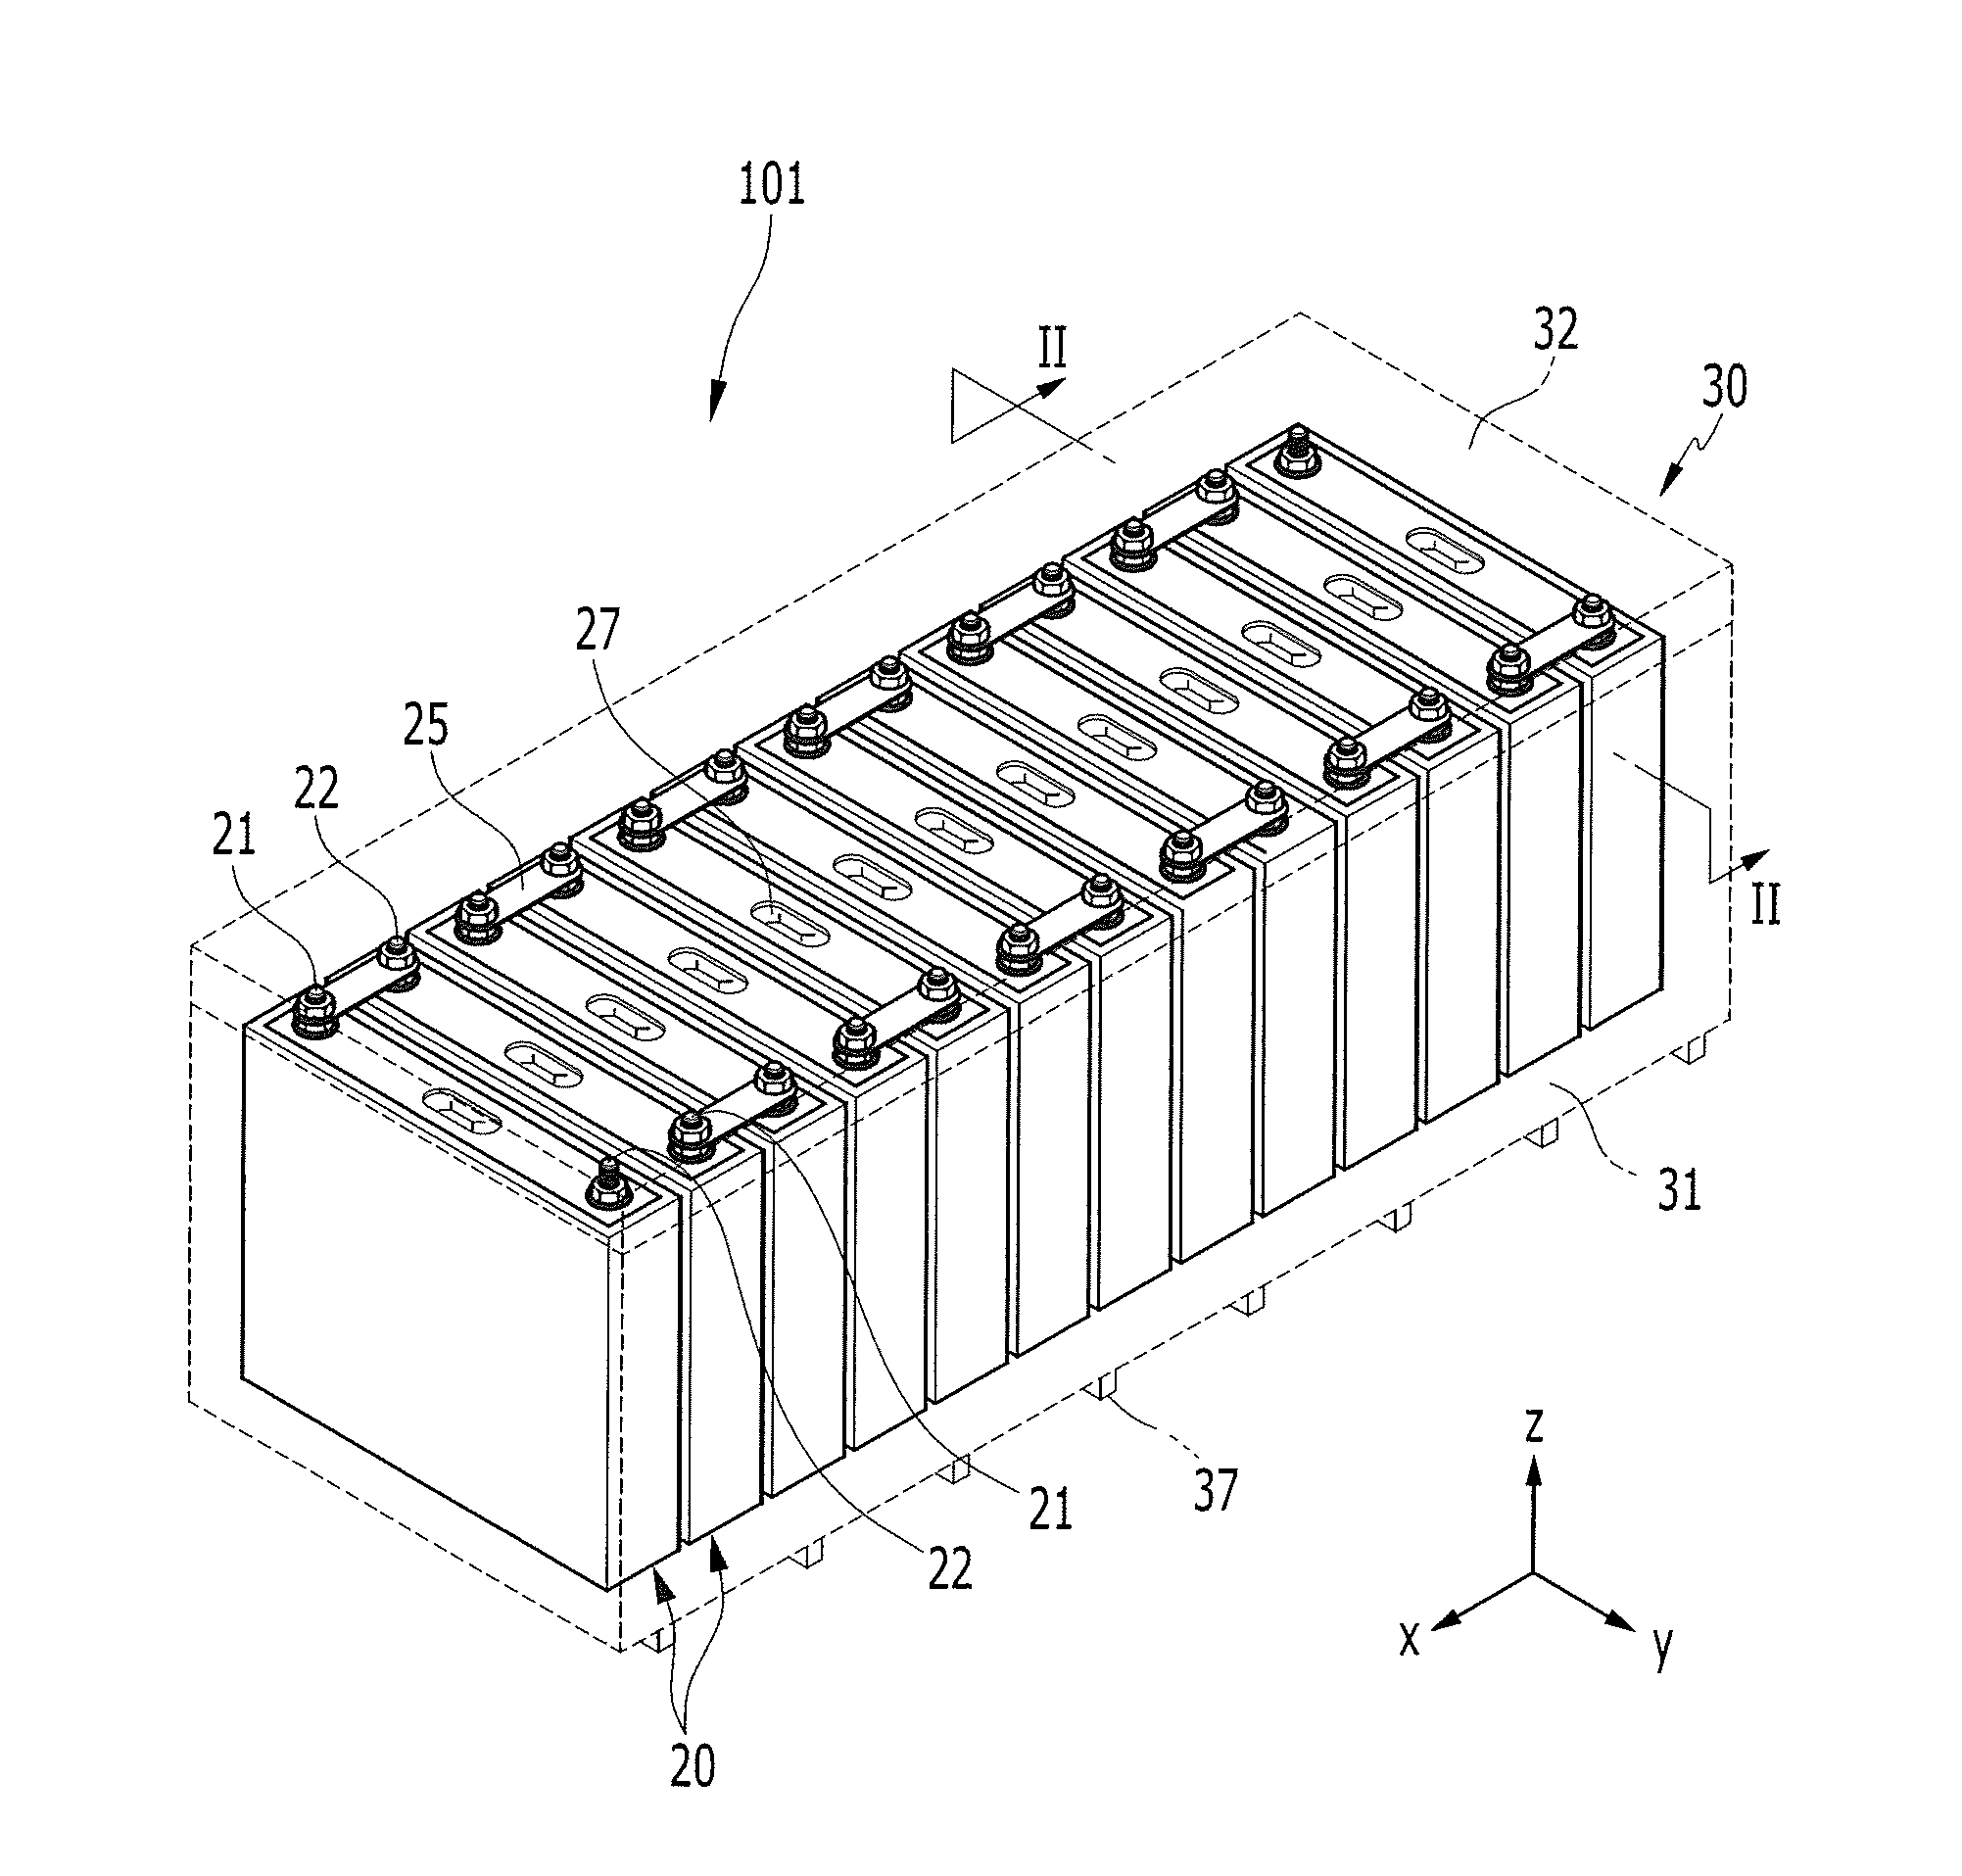 Battery module